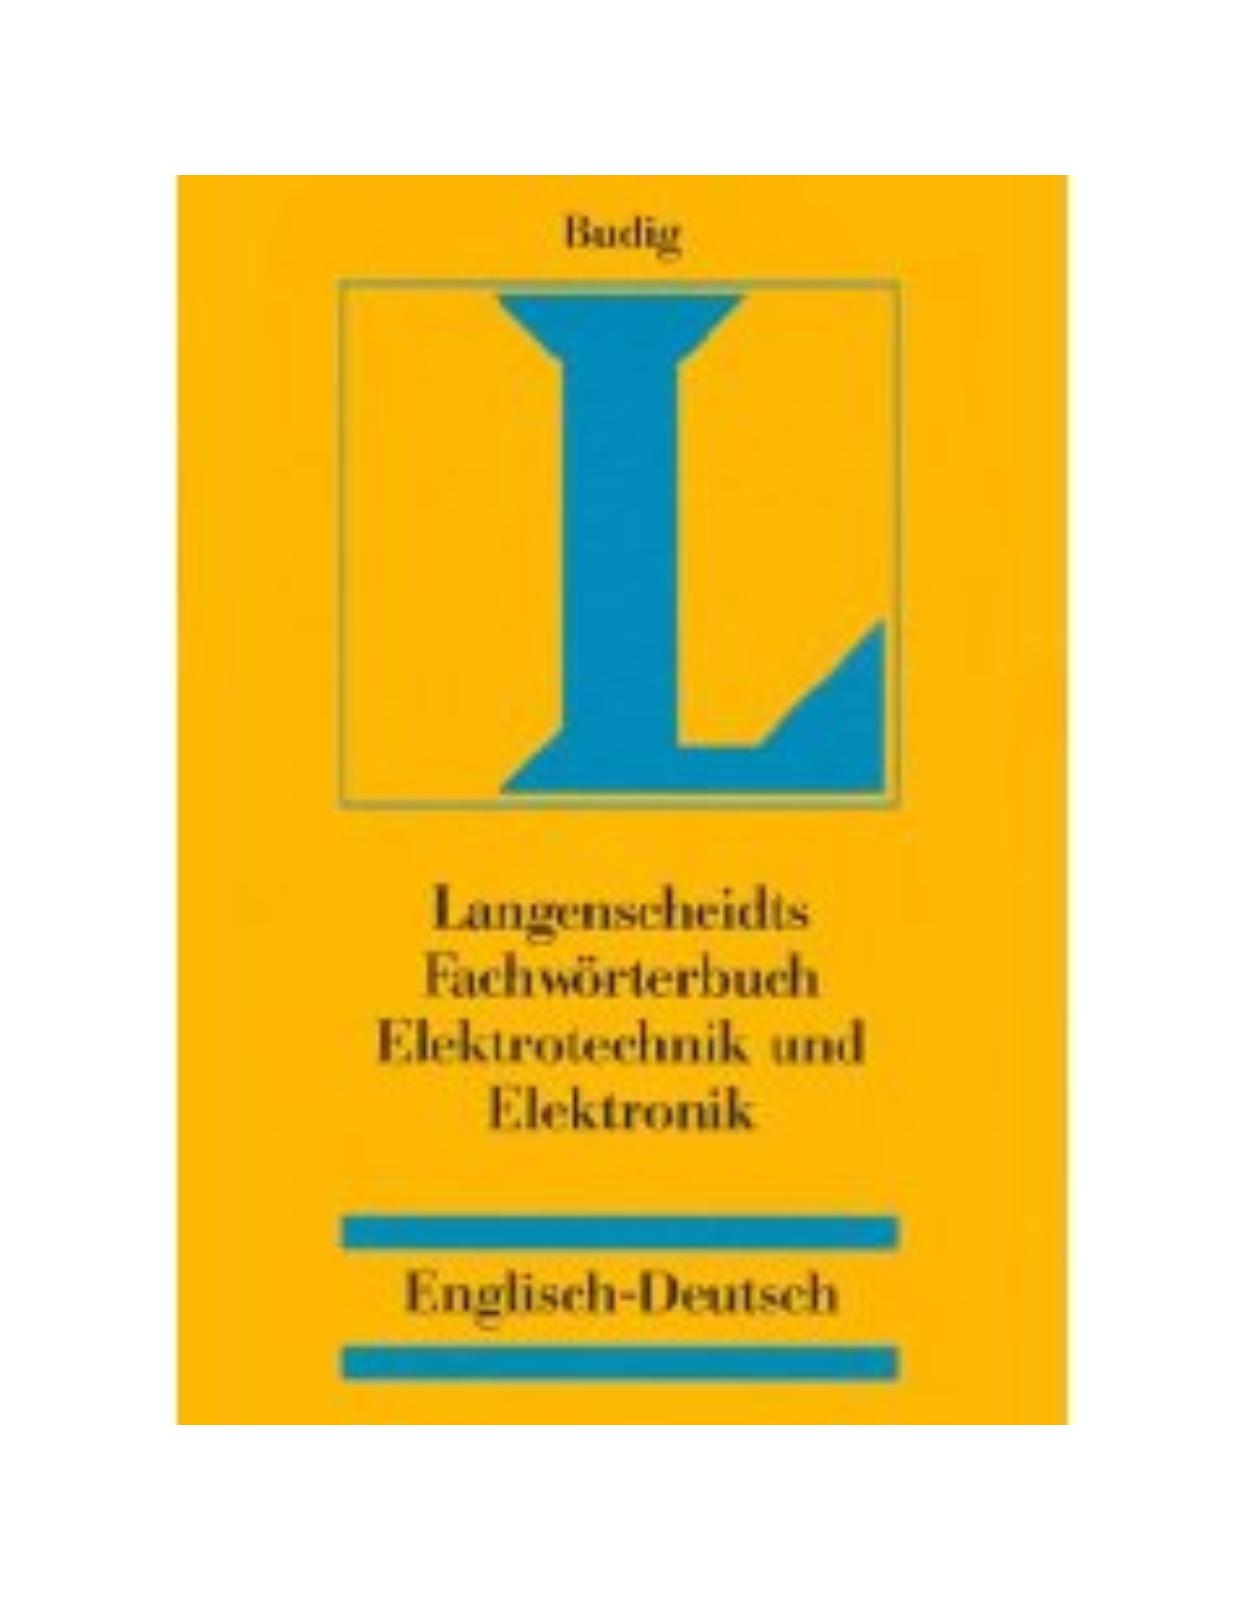 Langenscheidt Fachworterbuch Elektrotechnik und Elektronik